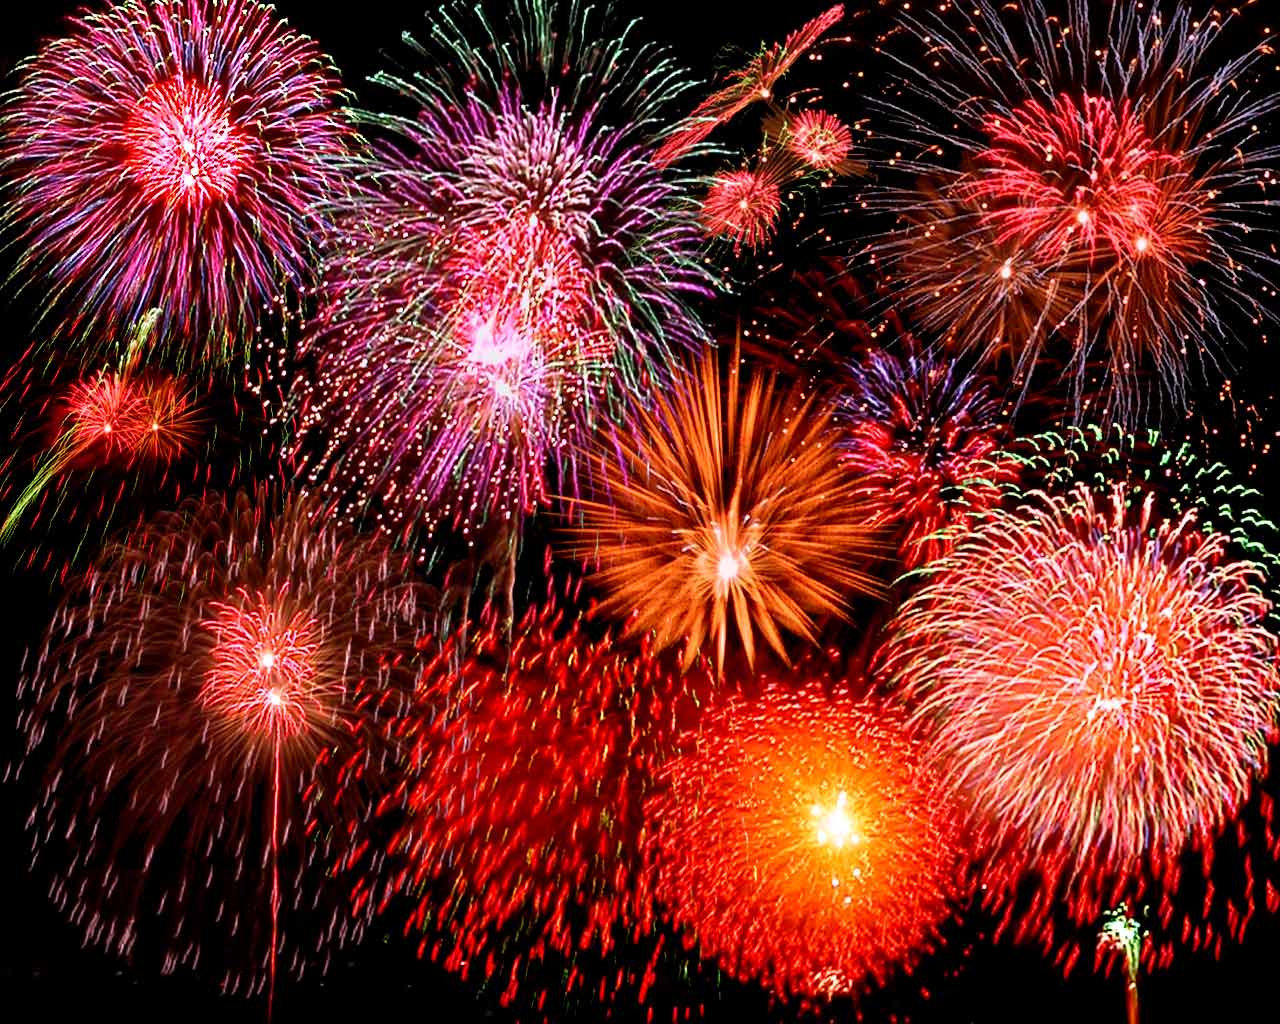 http://1.bp.blogspot.com/-KVGL-pePAtk/UNw1zCGdEFI/AAAAAAAAALk/CoXn2l_V1mQ/s1600/fireworks.jpg